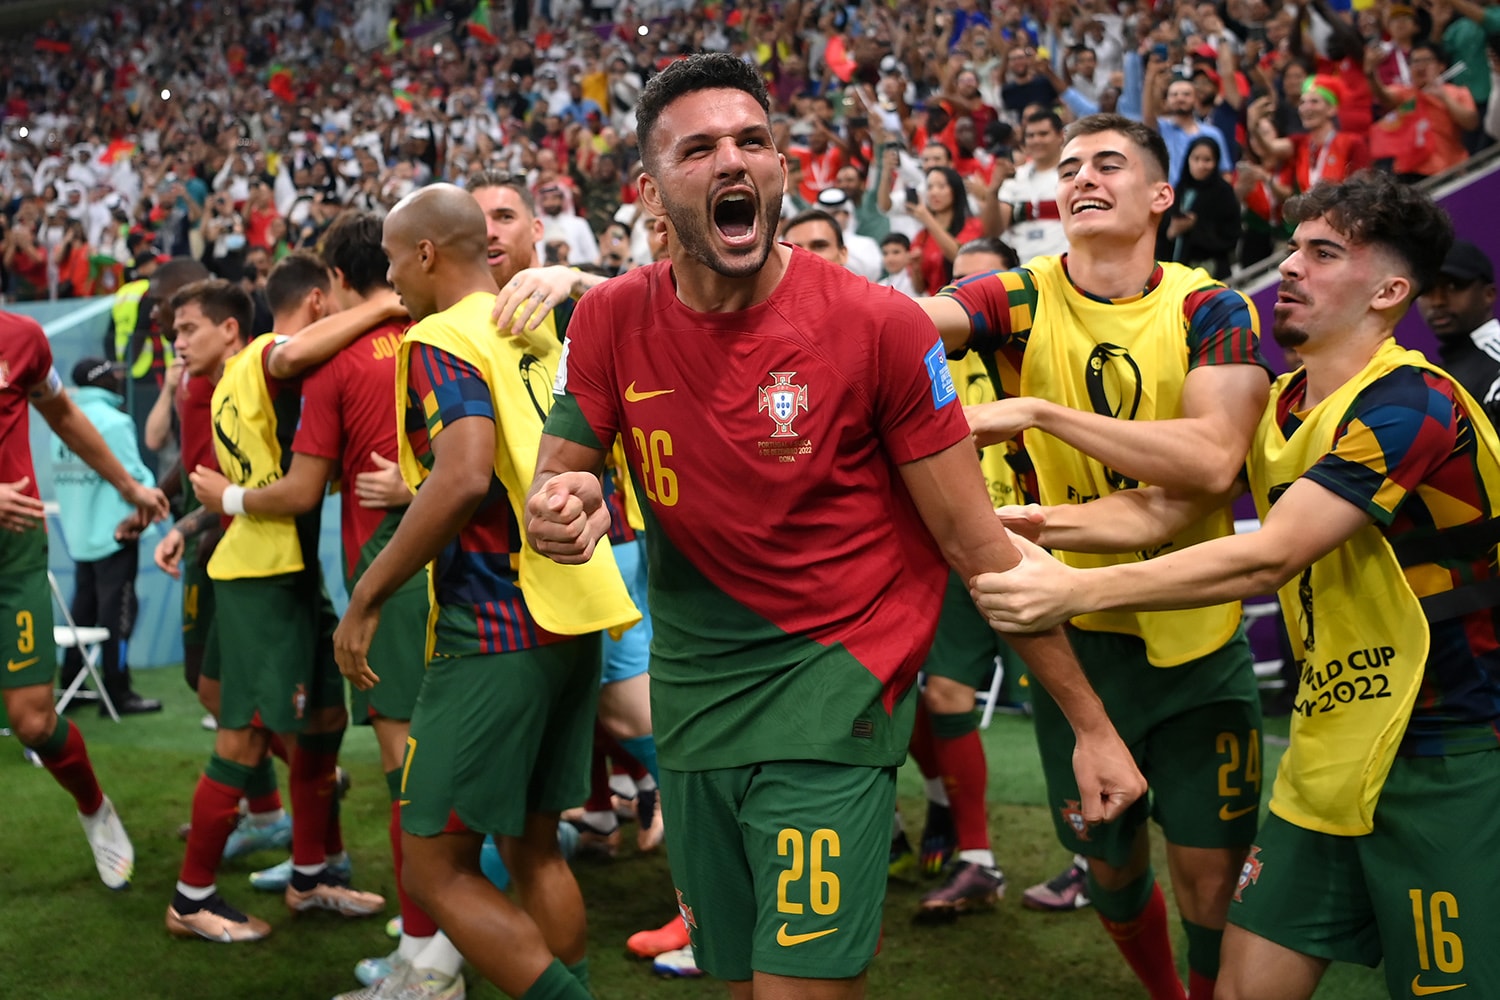 2022 世界盃 – 新星 Goncalo Ramos 取代 Cristiano Ronaldo 先發上演帽子戲法 率領葡萄牙大勝瑞士